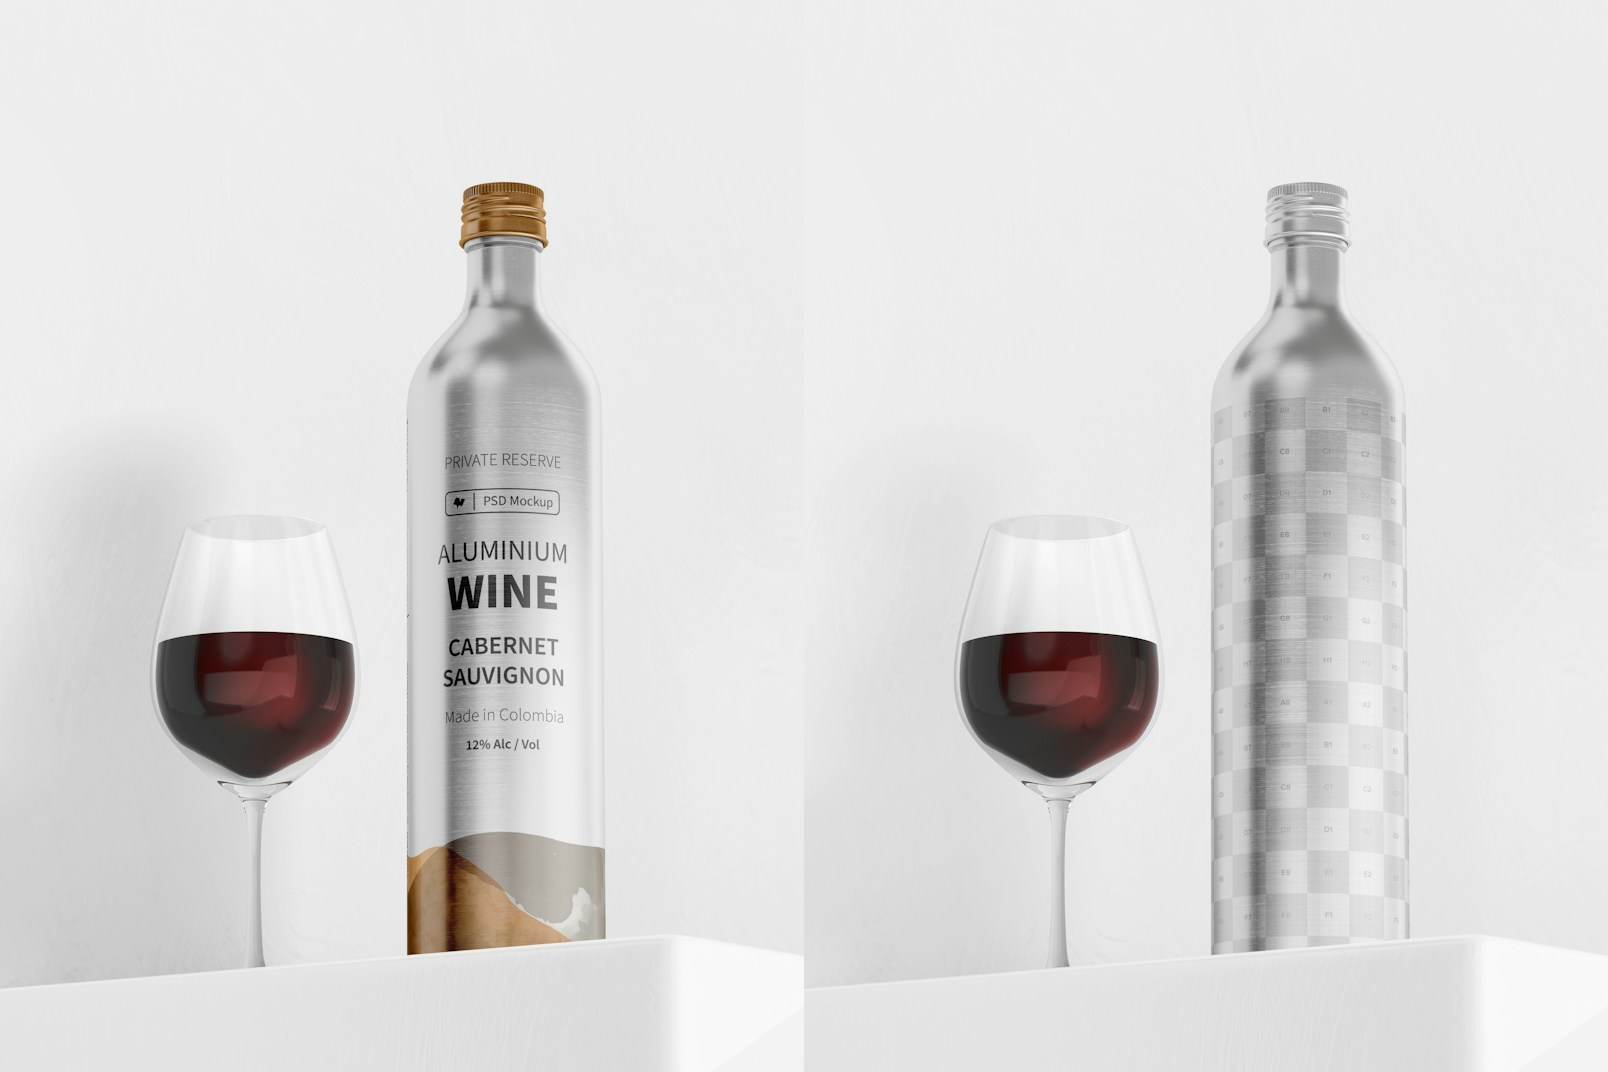 Aluminium Wine Bottle Mockup, with Glass